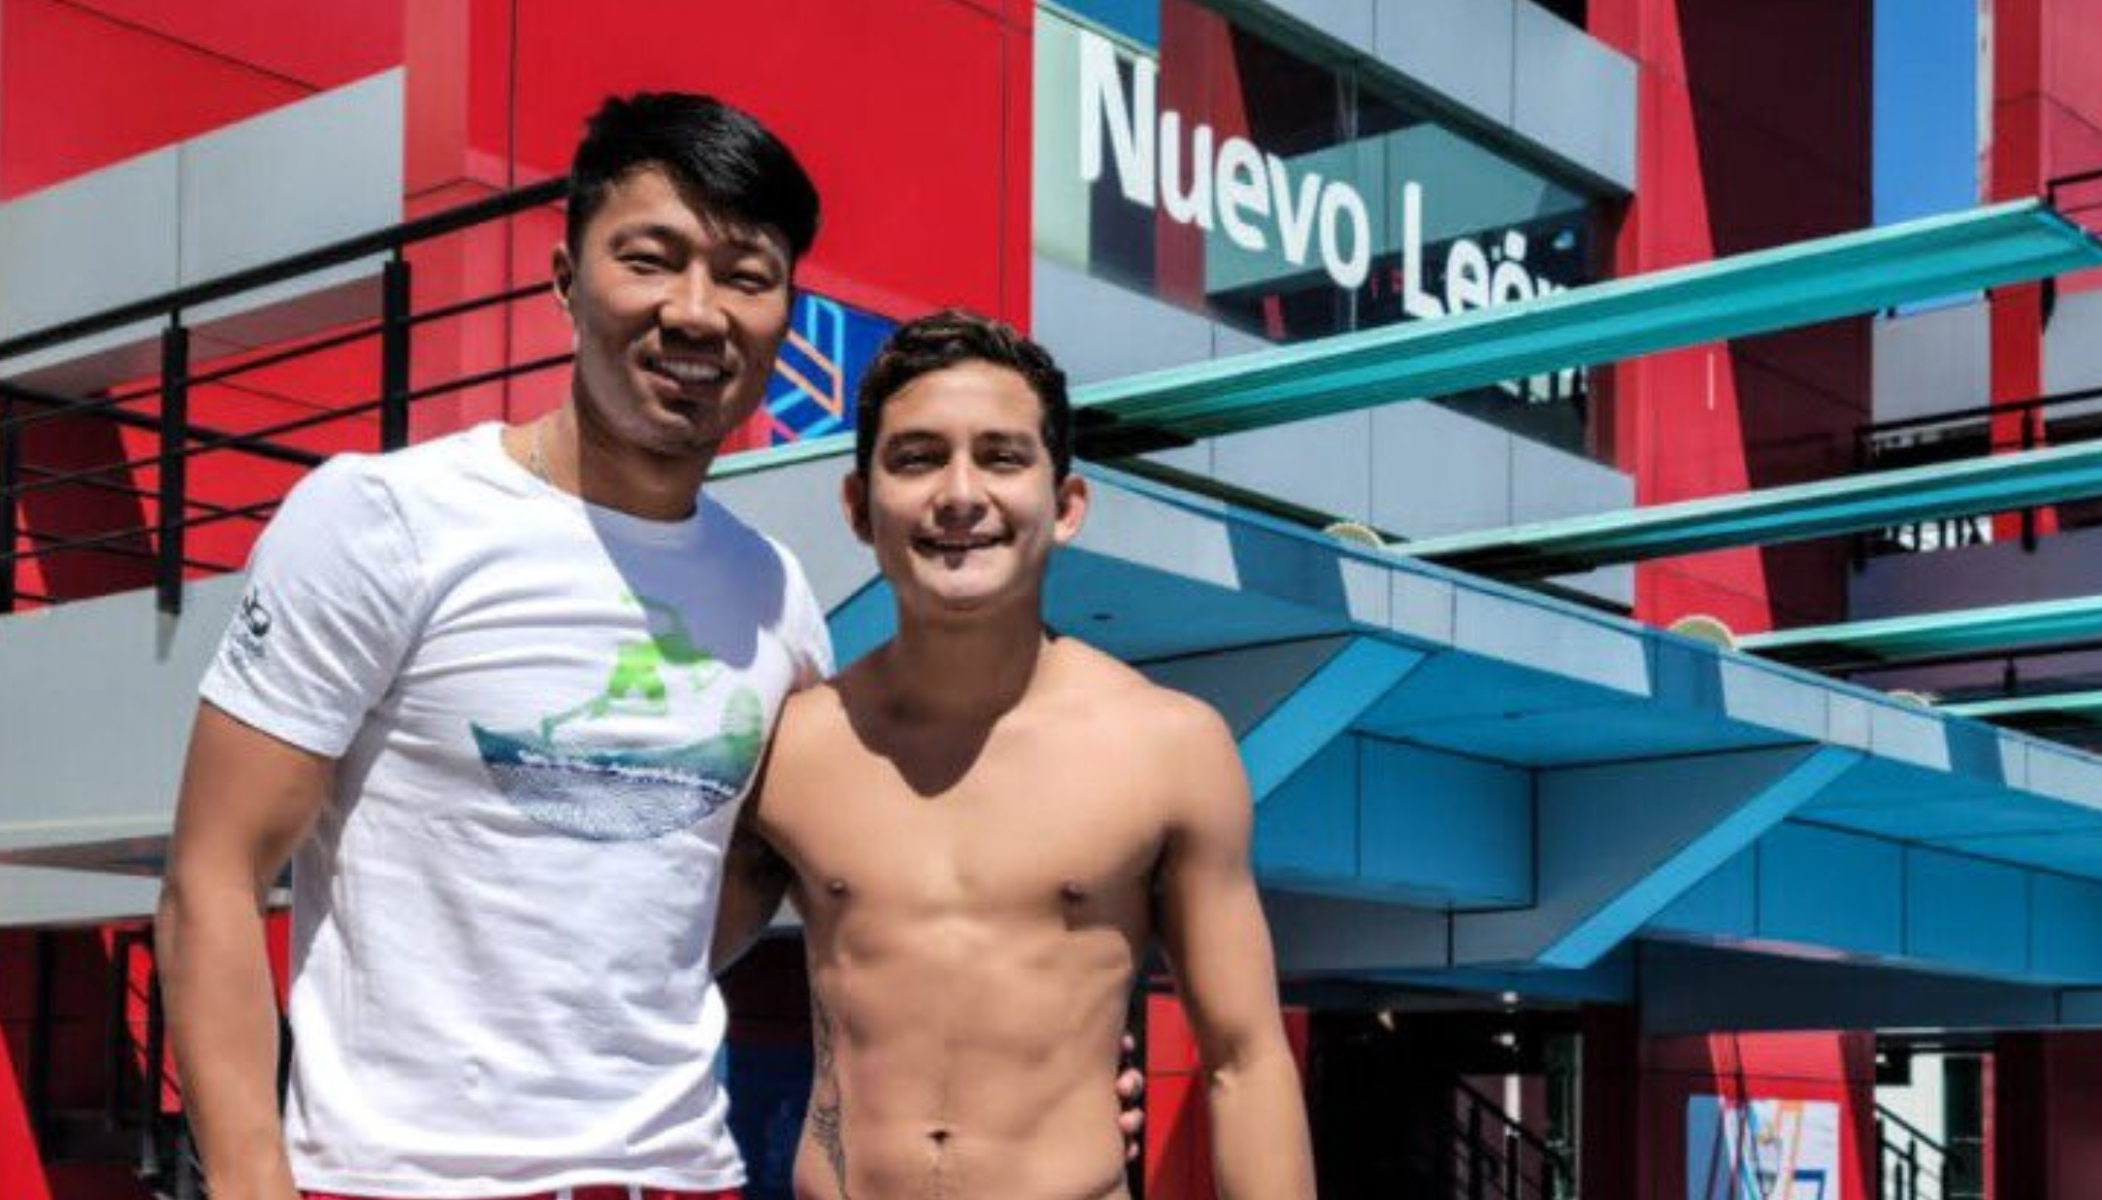 Clavadista Kevin Berlín Reyes (der.) clavadista olímpico mexicano con su nuevo entrenador Shi Qingyang. Cortesía
